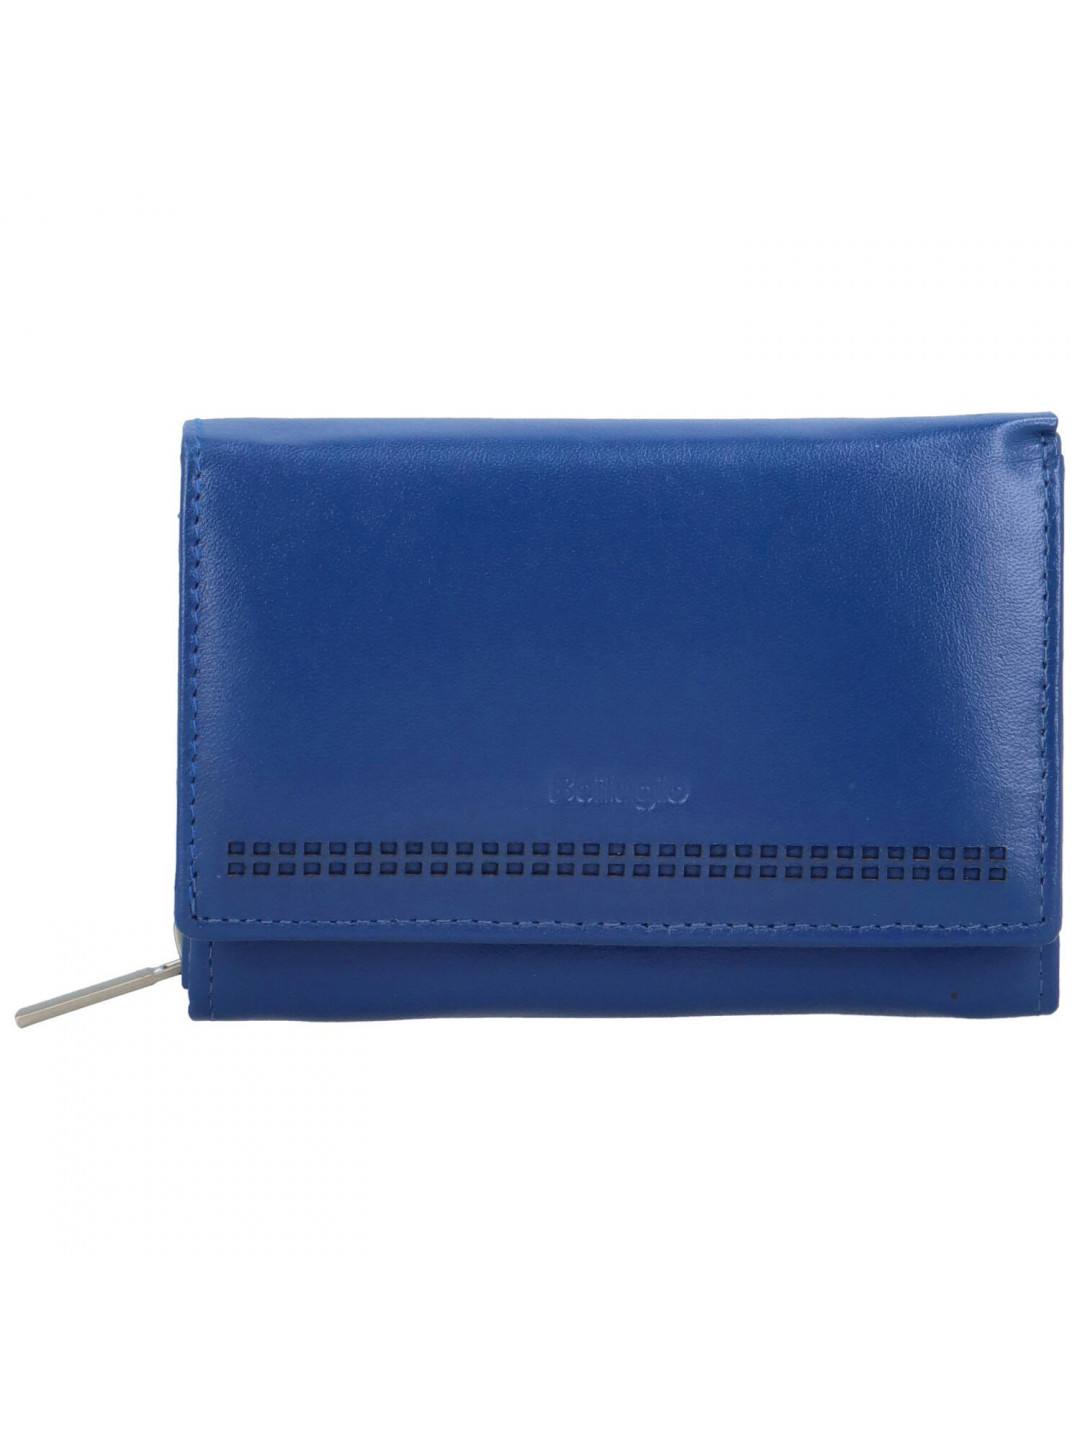 Dámská kožená peněženka modrá – Bellugio Chiarana